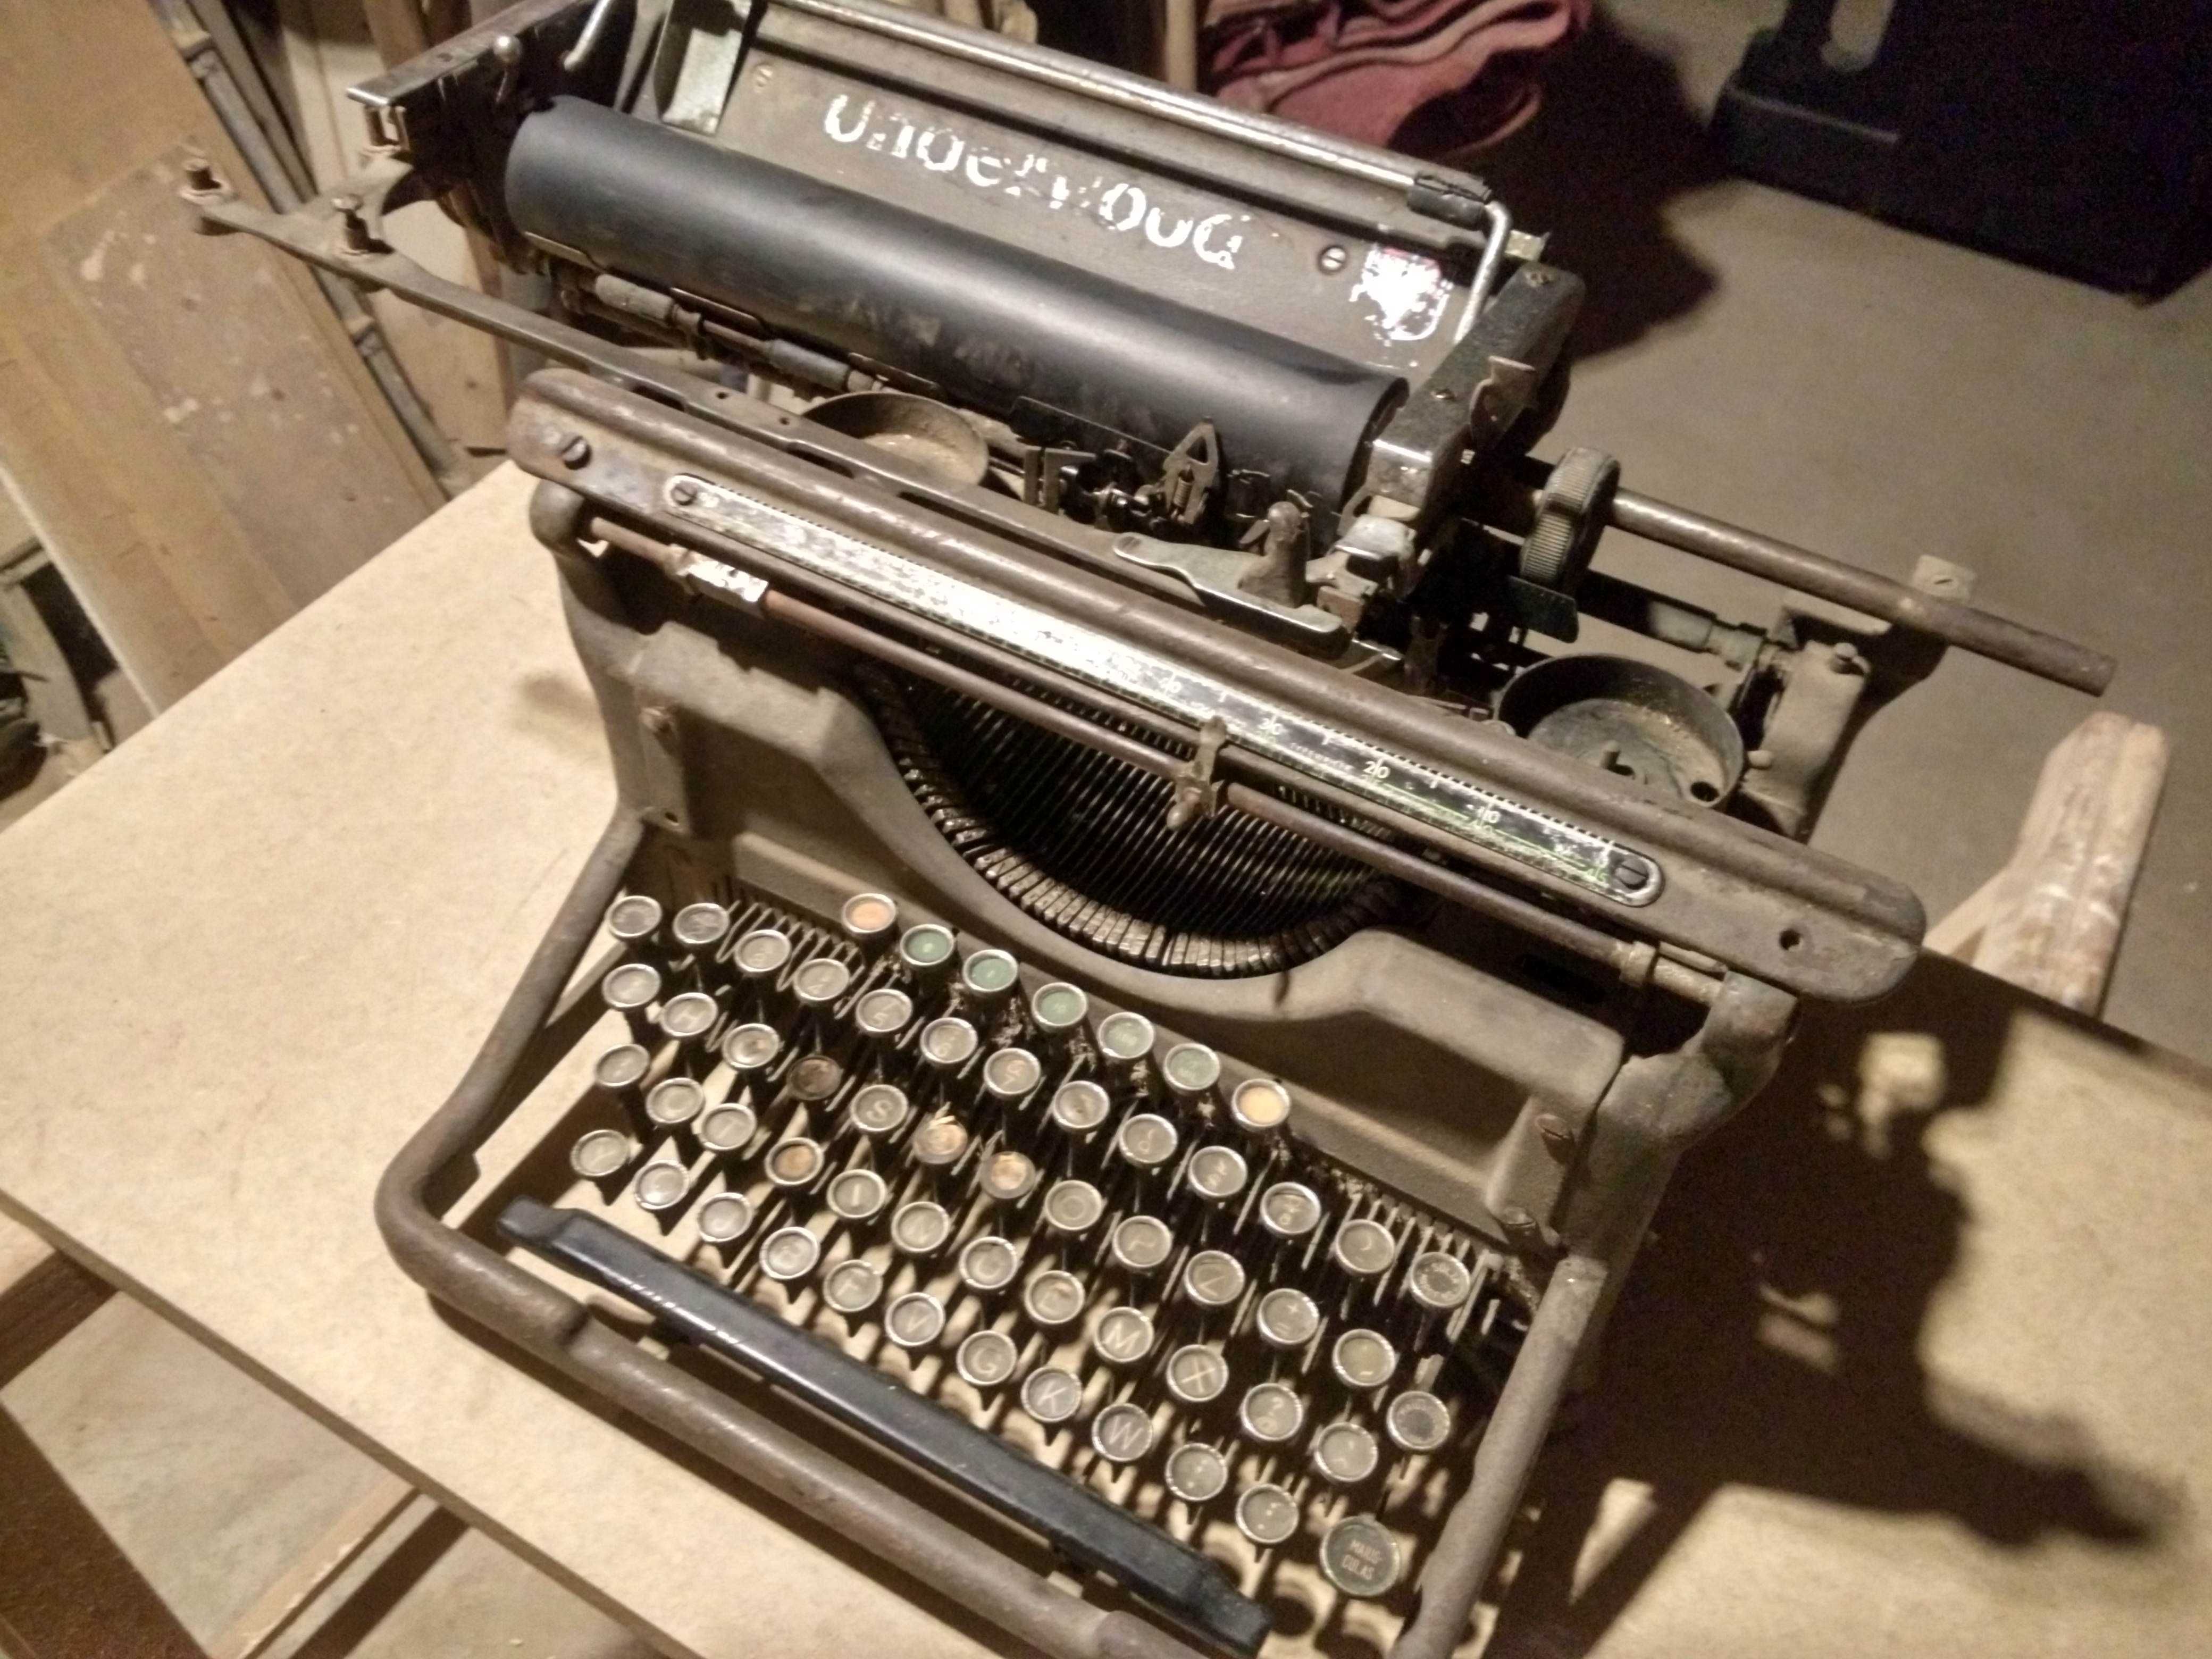 Underwood n.º 6 - máquina de escrever com cerca de 100 anos